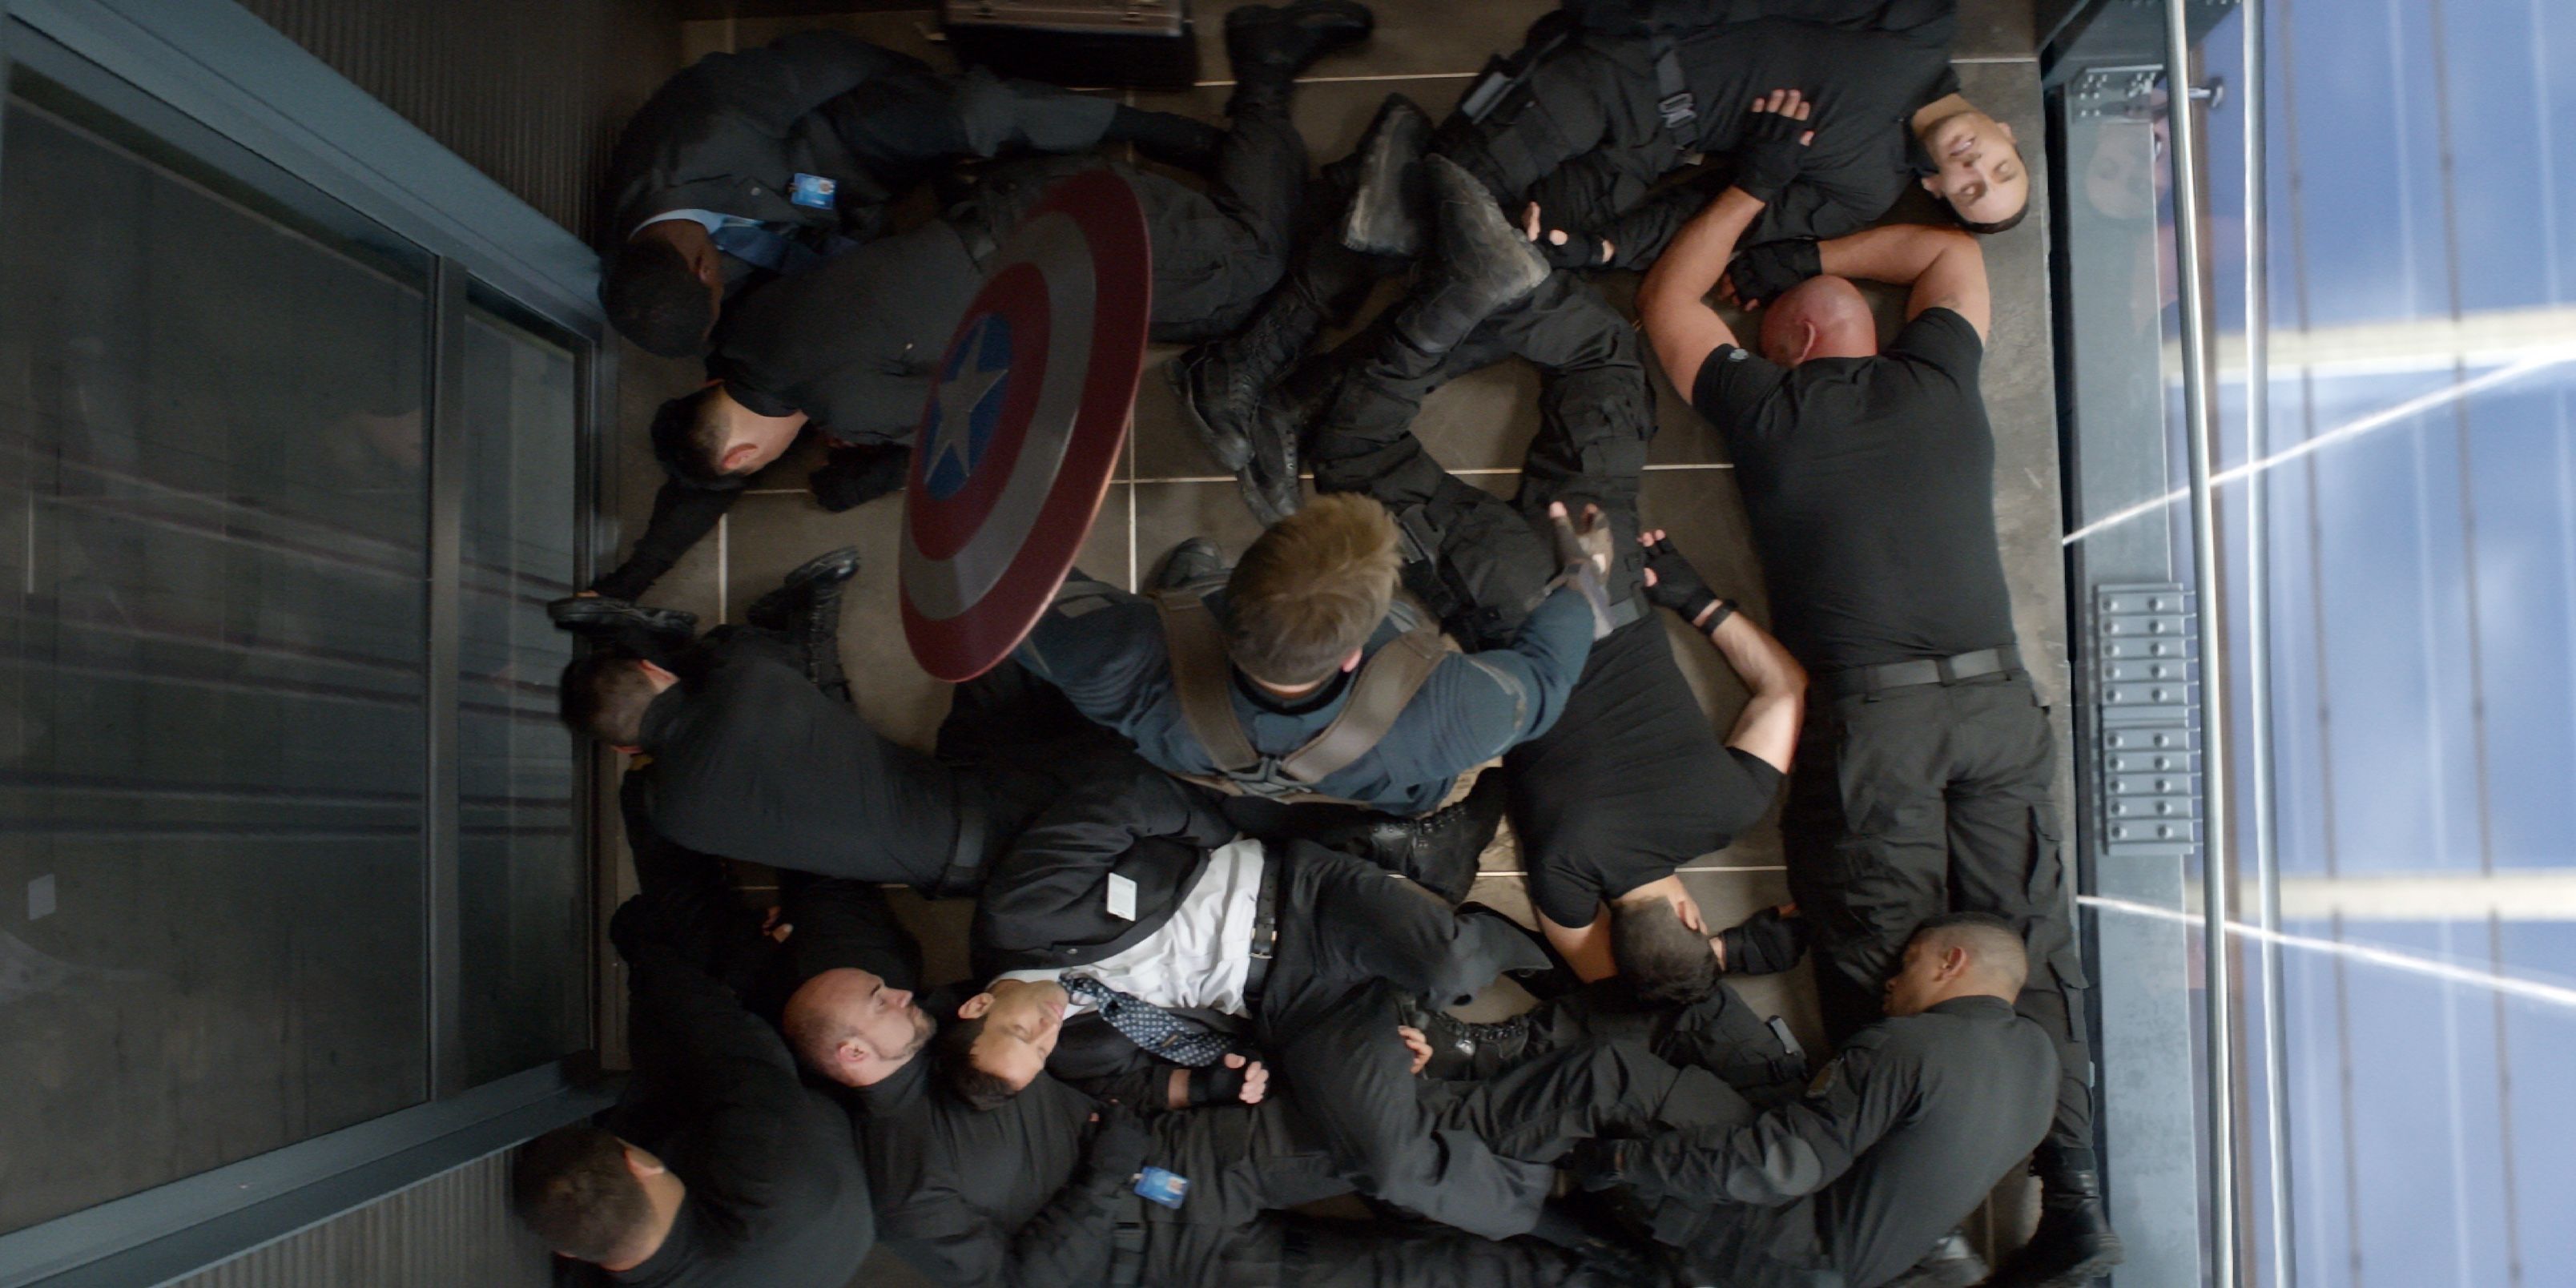 Captain America Elevator fight scene, The Winter Soldier